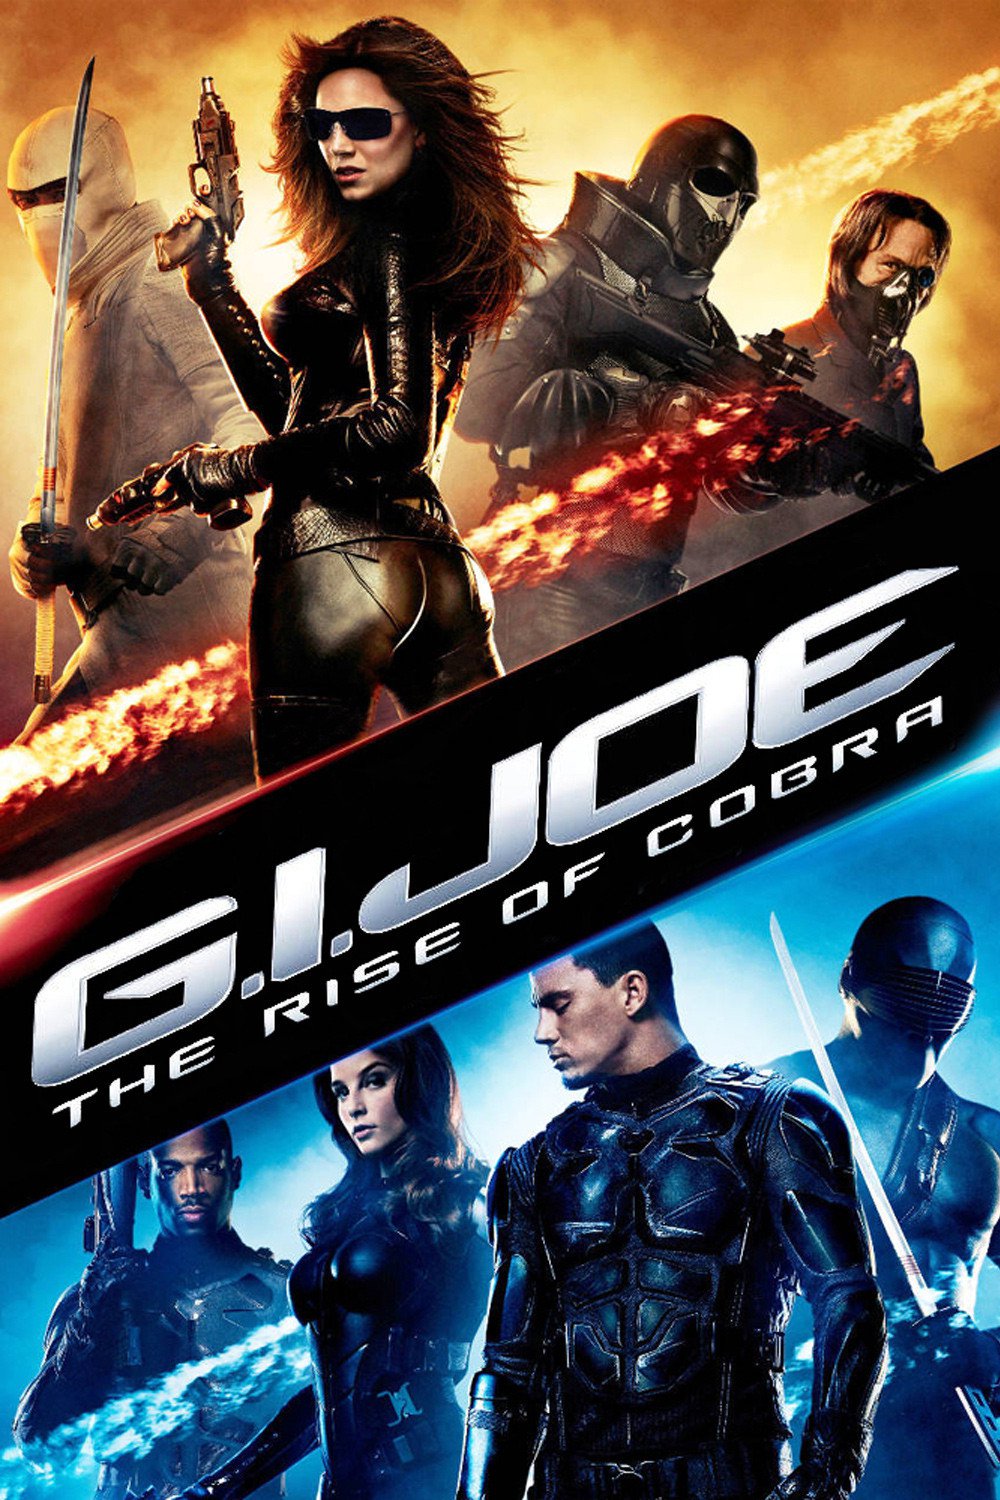 Joe of cobra the rise gi G.I. Joe: